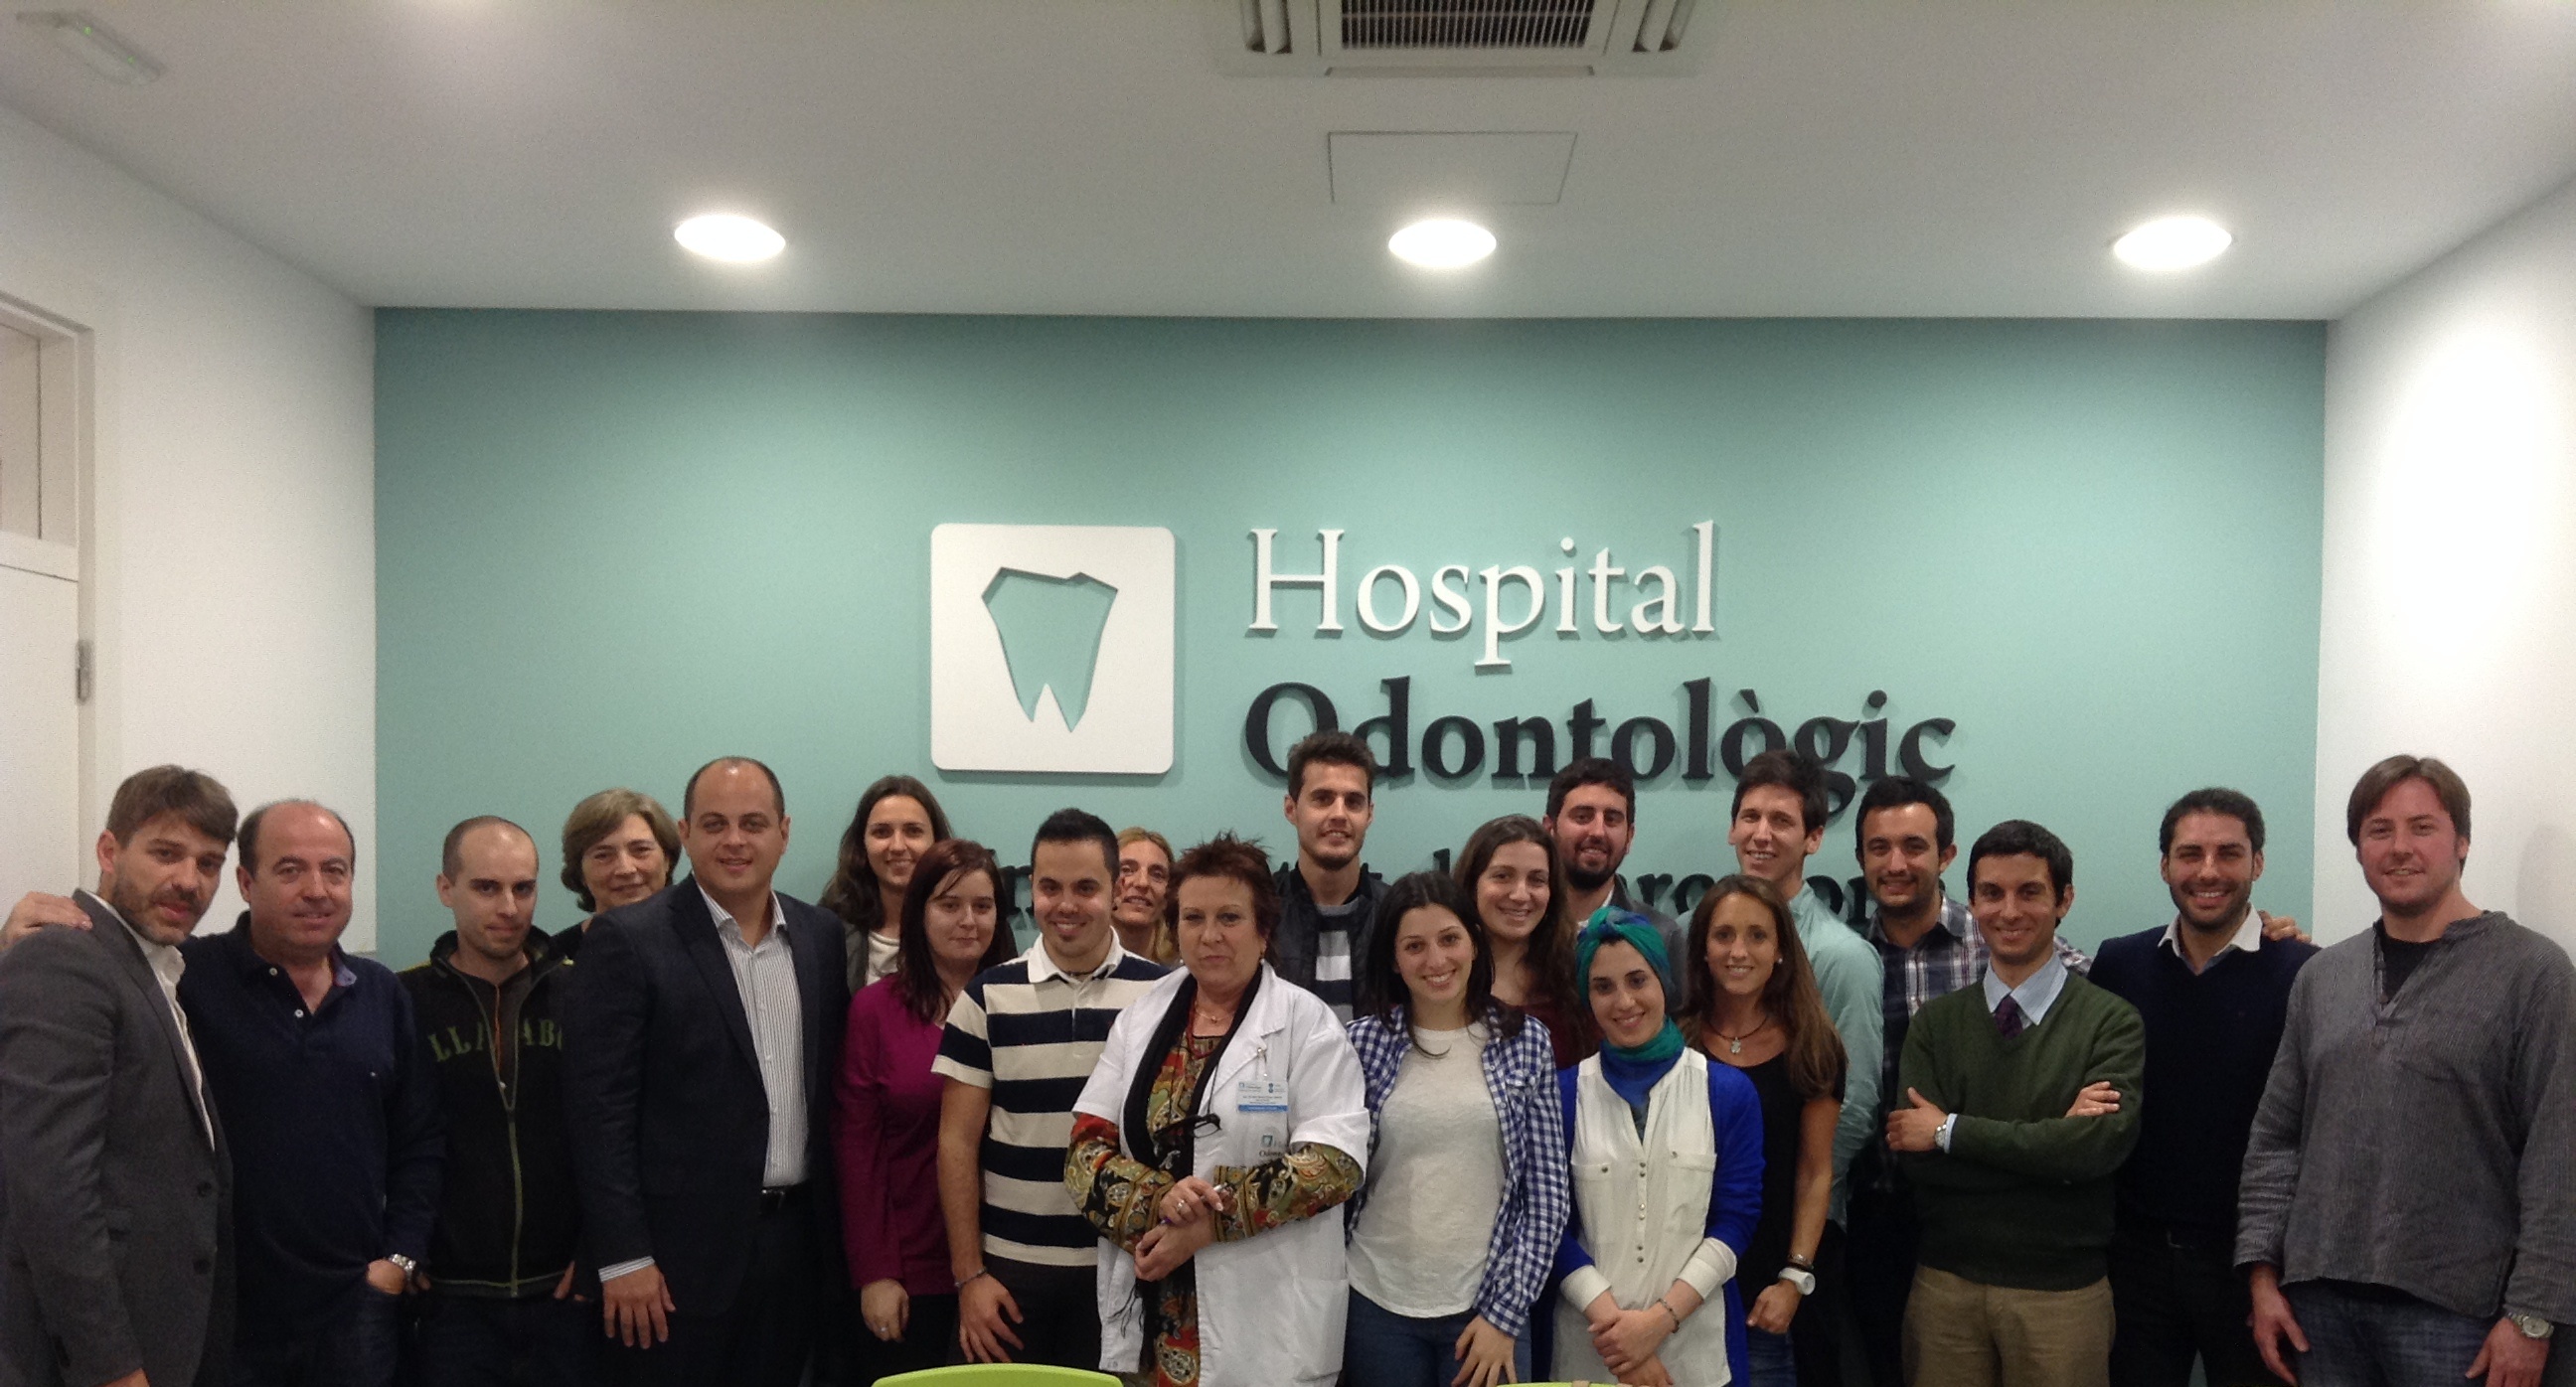 Conferència del Dr. Gustavo De Deus a l'Hospital Odontològic Universitat de Barcelona